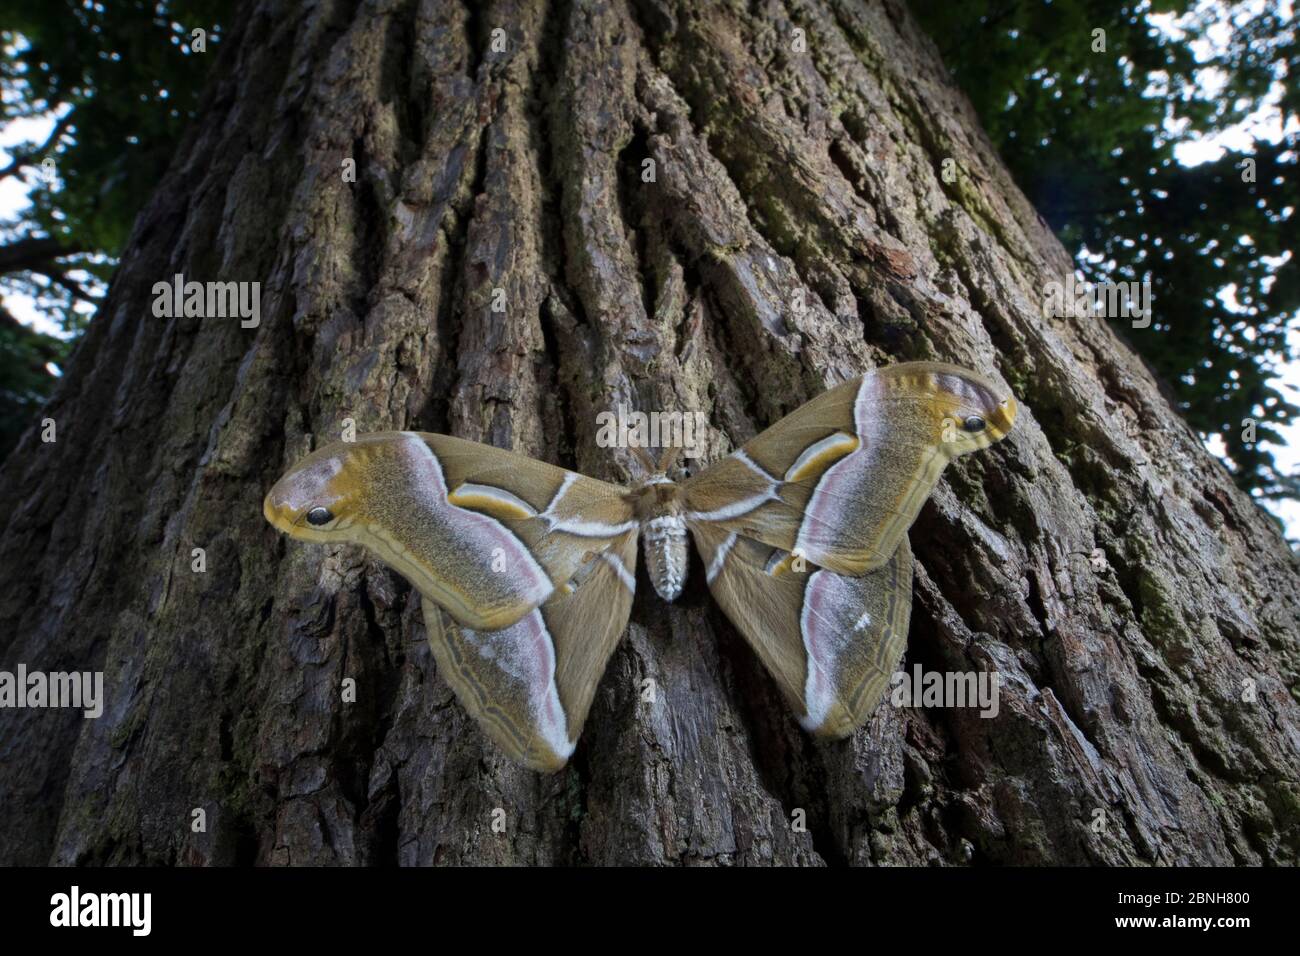 Ailanthus silkmoth (Samia cynthia) une espèce introduite, prise contre le tronc d'arbre, France Banque D'Images